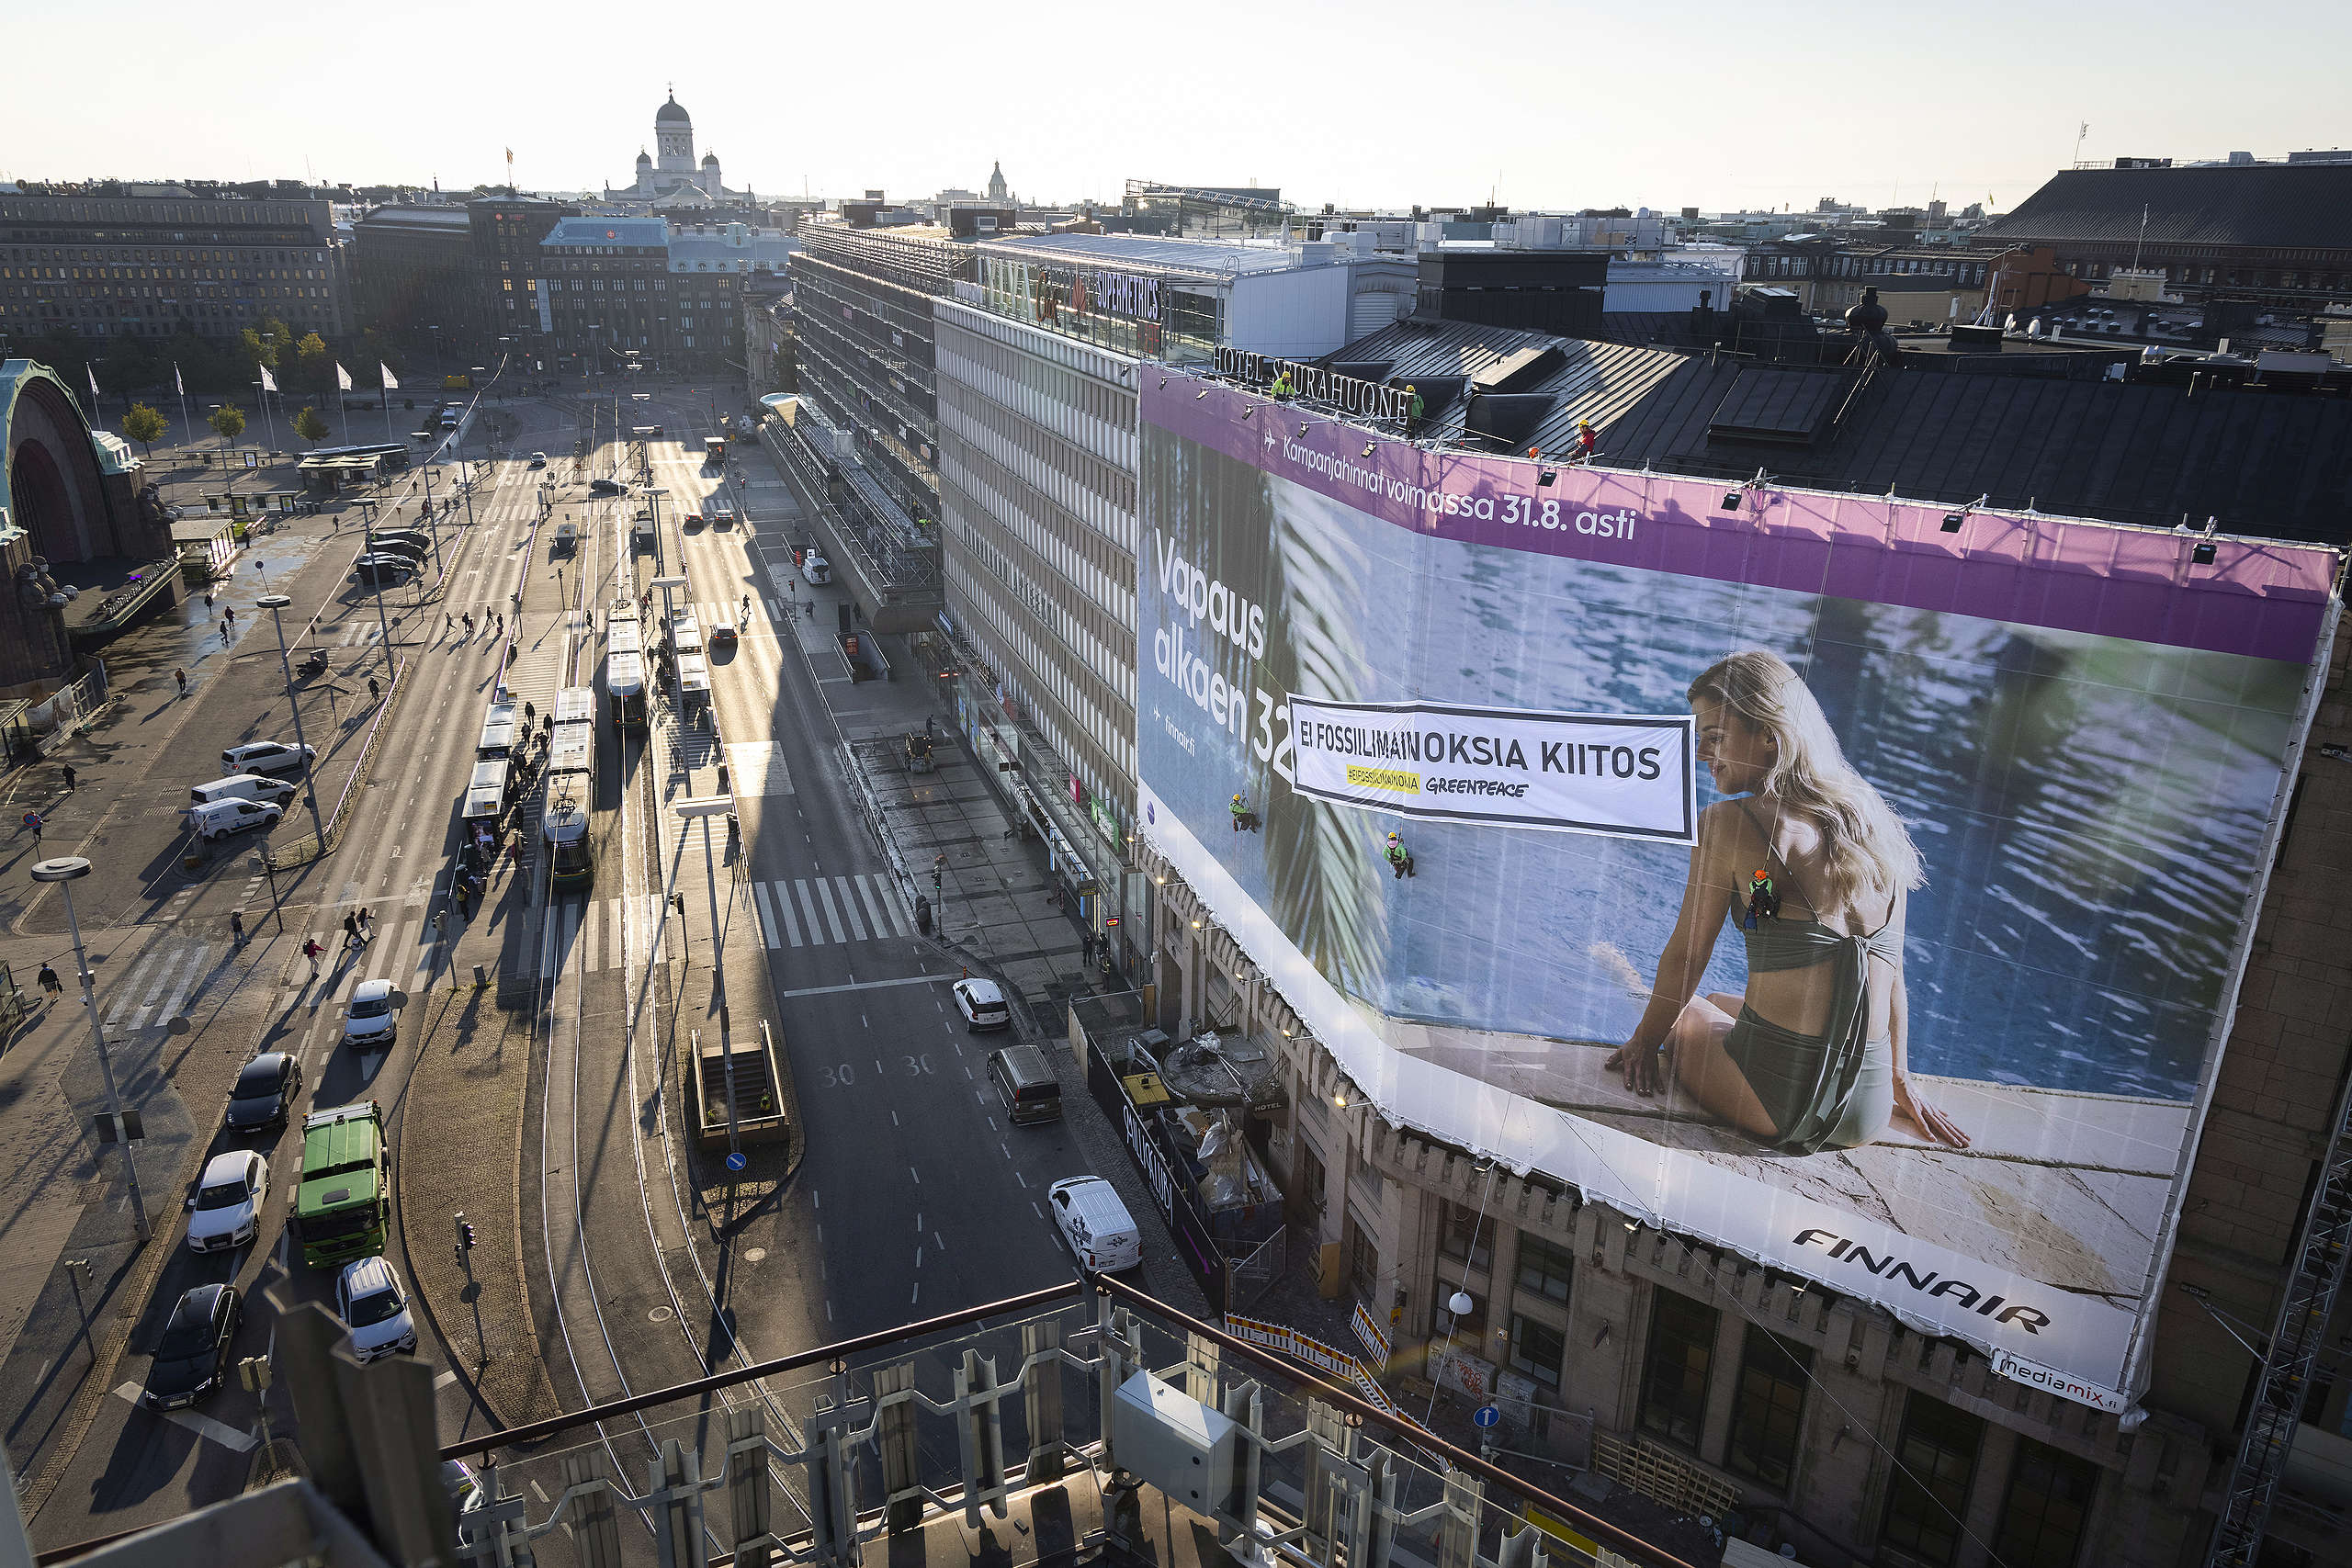 Greenpeacen aktivistit ripustivat fossiilimainontaa vastustavan banderollin Finnairin mainoksen päälle Helsingin Kaivokadulla 30.8.2021